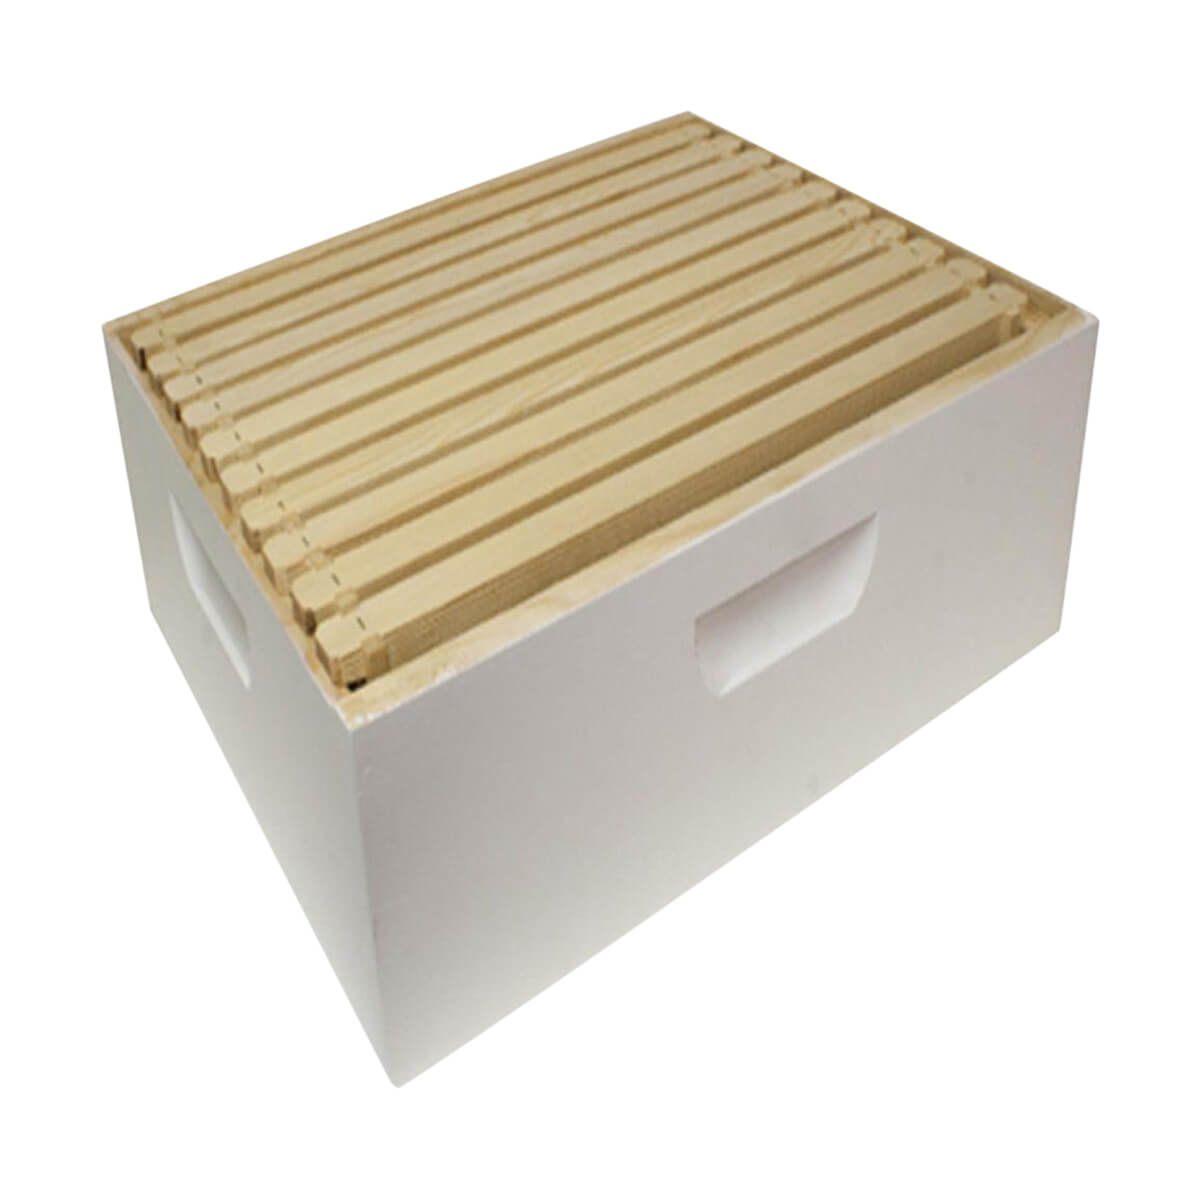 Assembled Medium Hive Box - 1625-in x 19875-in x 6625-in